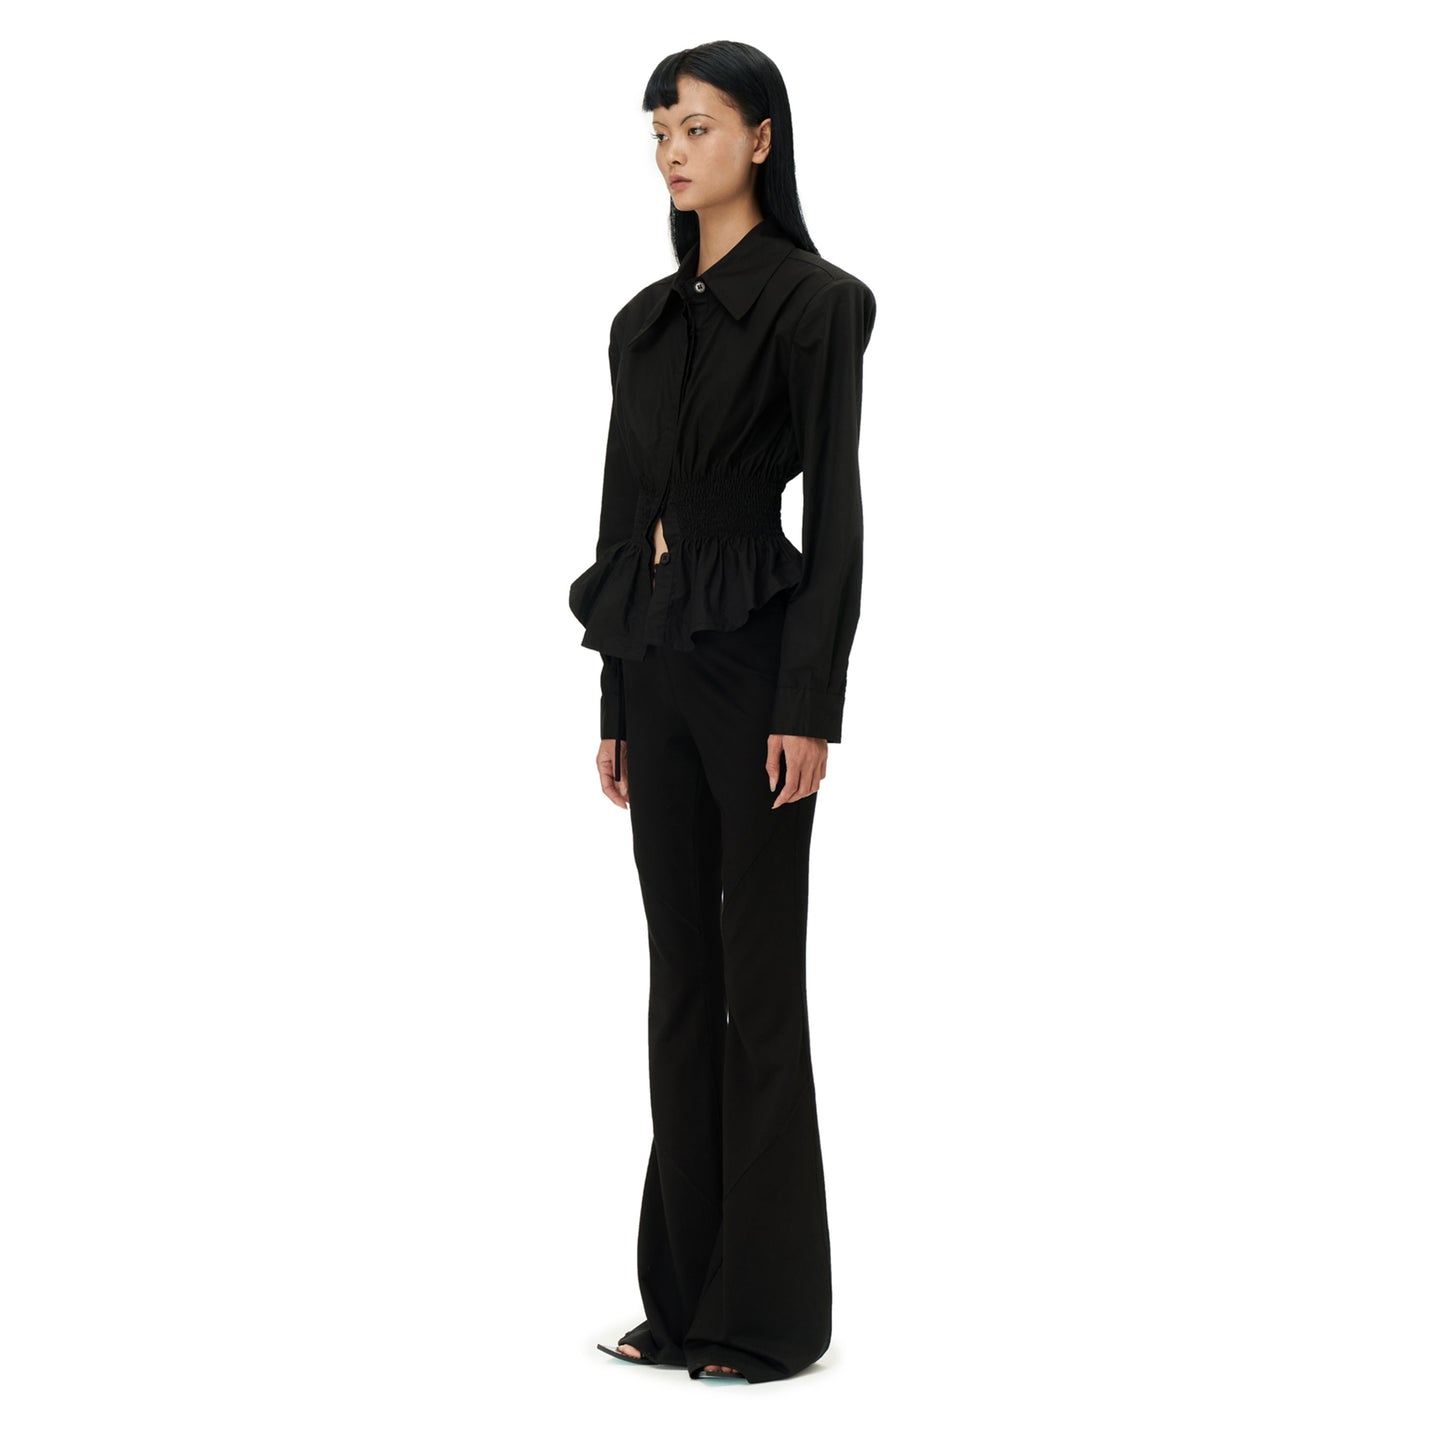 Coana Shirred Waist Poplin Shirt in Black